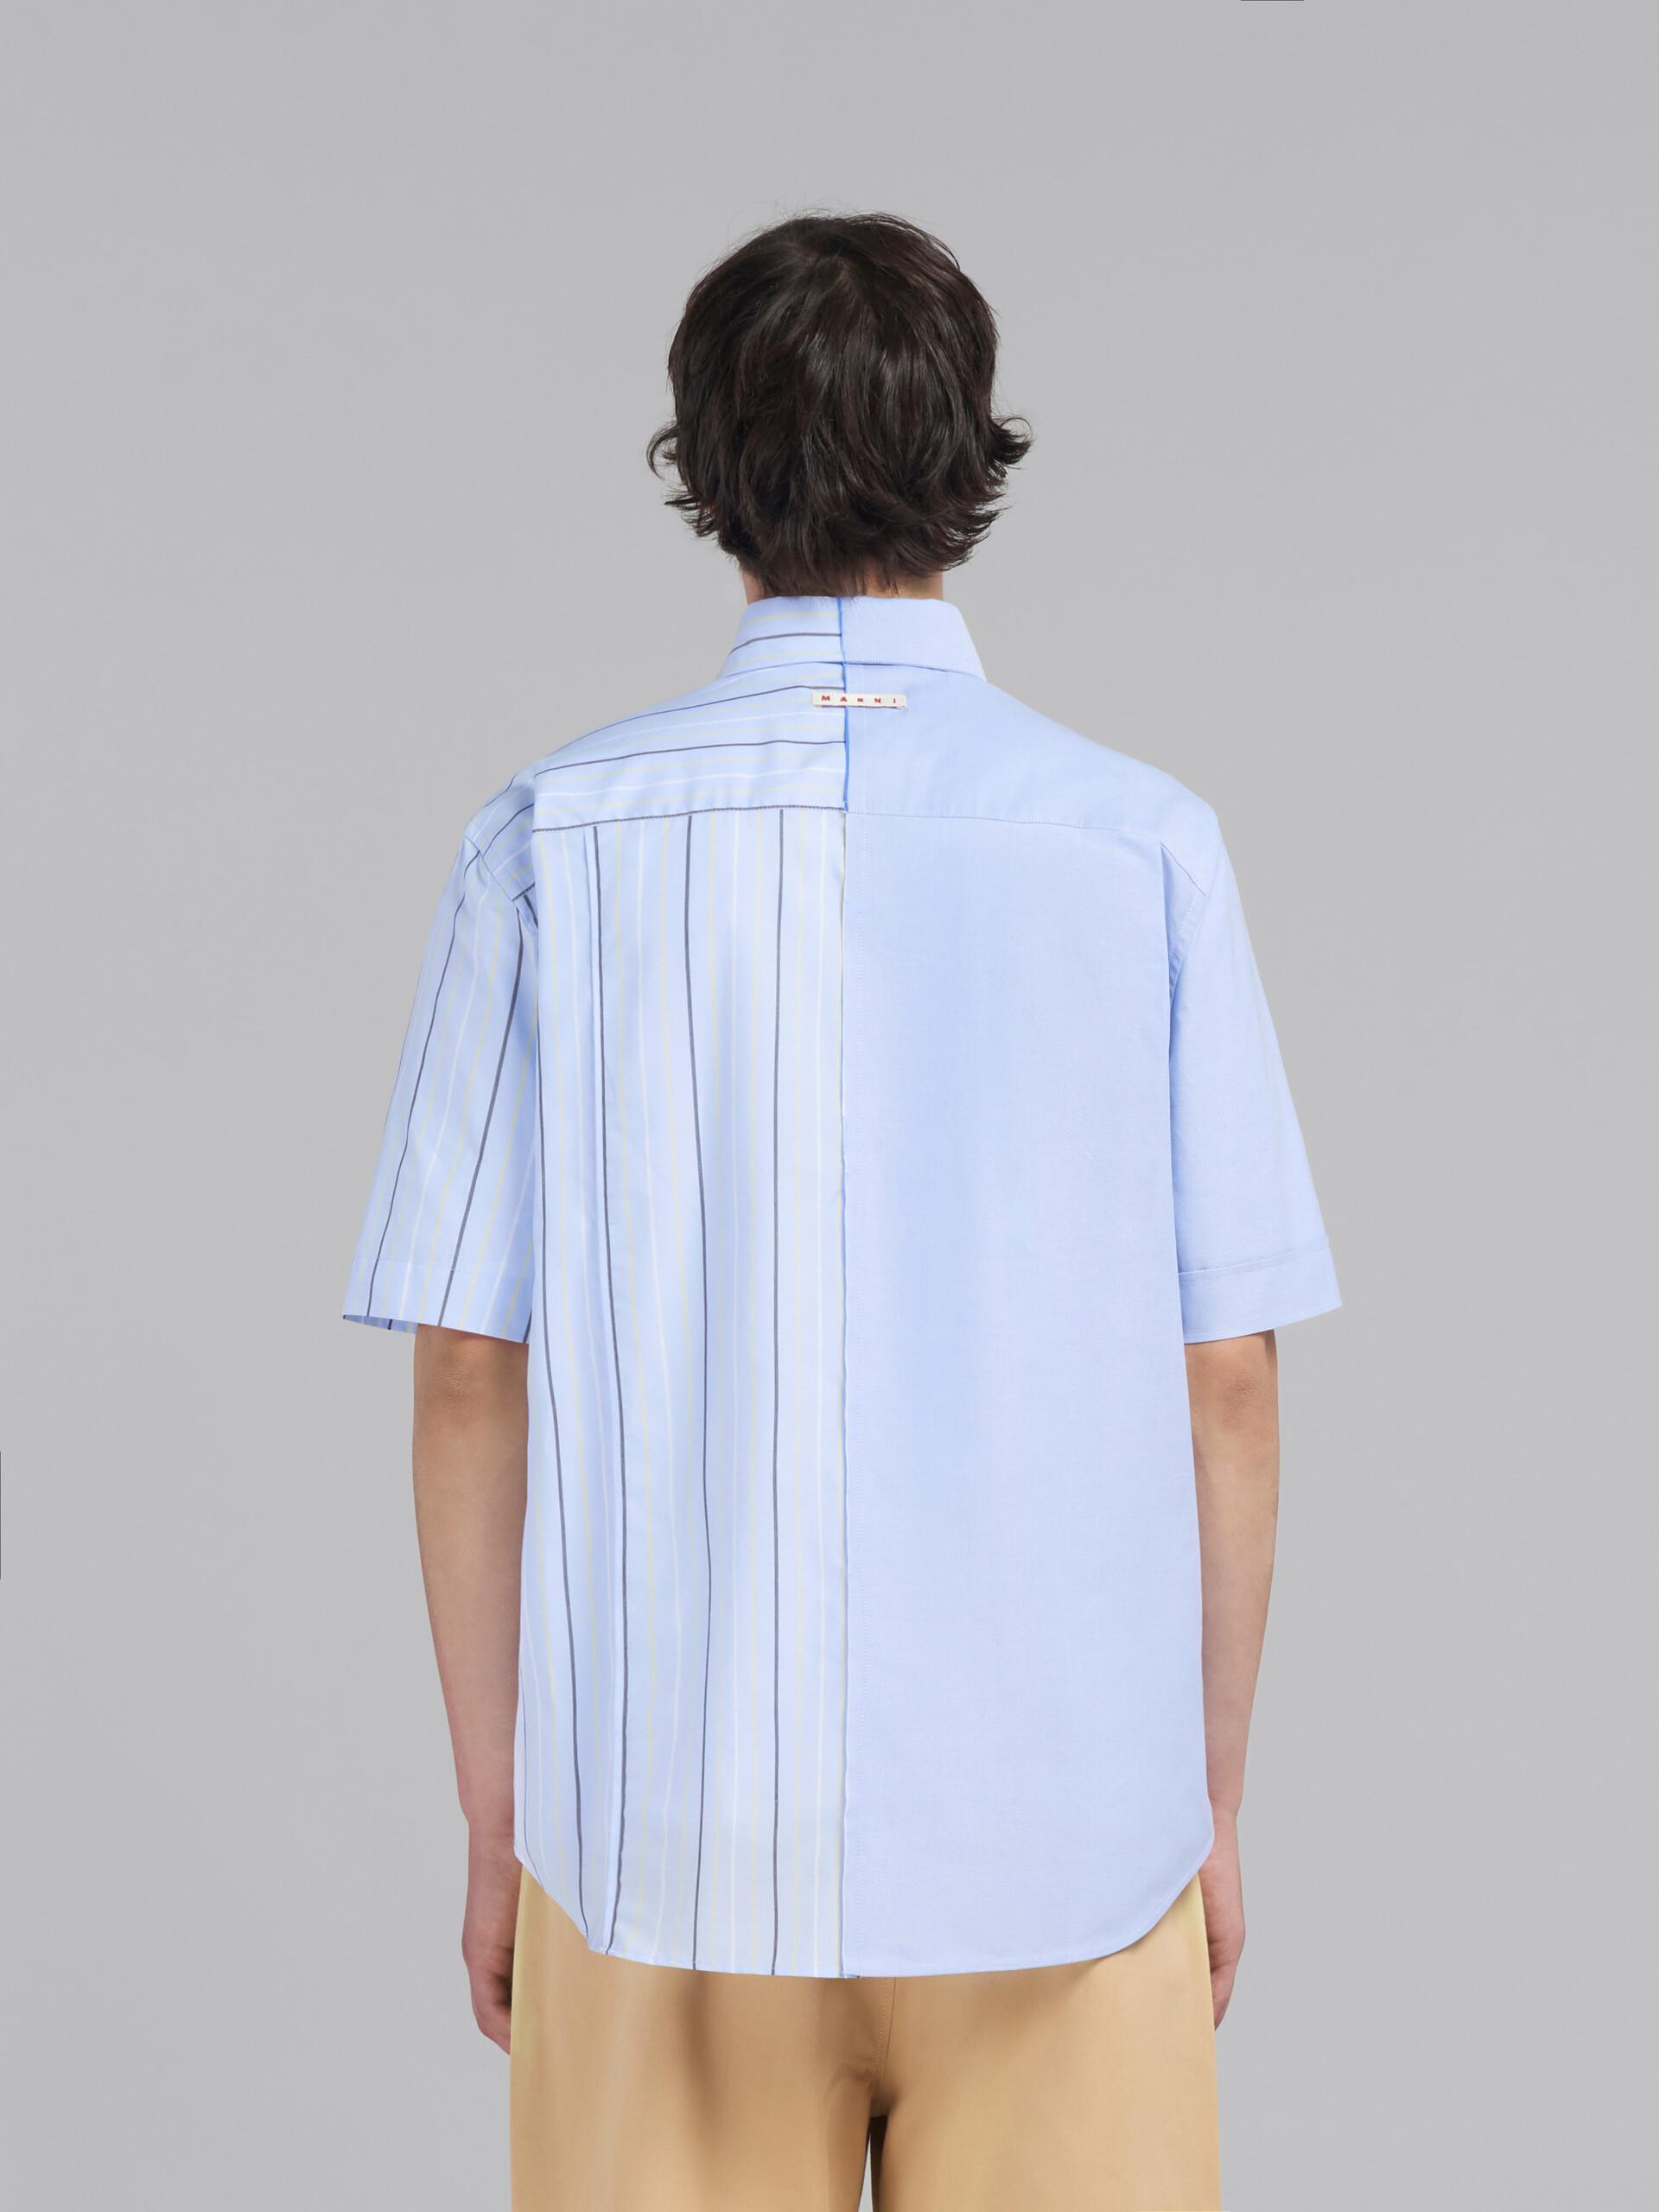 Hellblaues Hemd aus Bio-Popeline mit unterschiedlichen Hälften - Hemden - Image 3